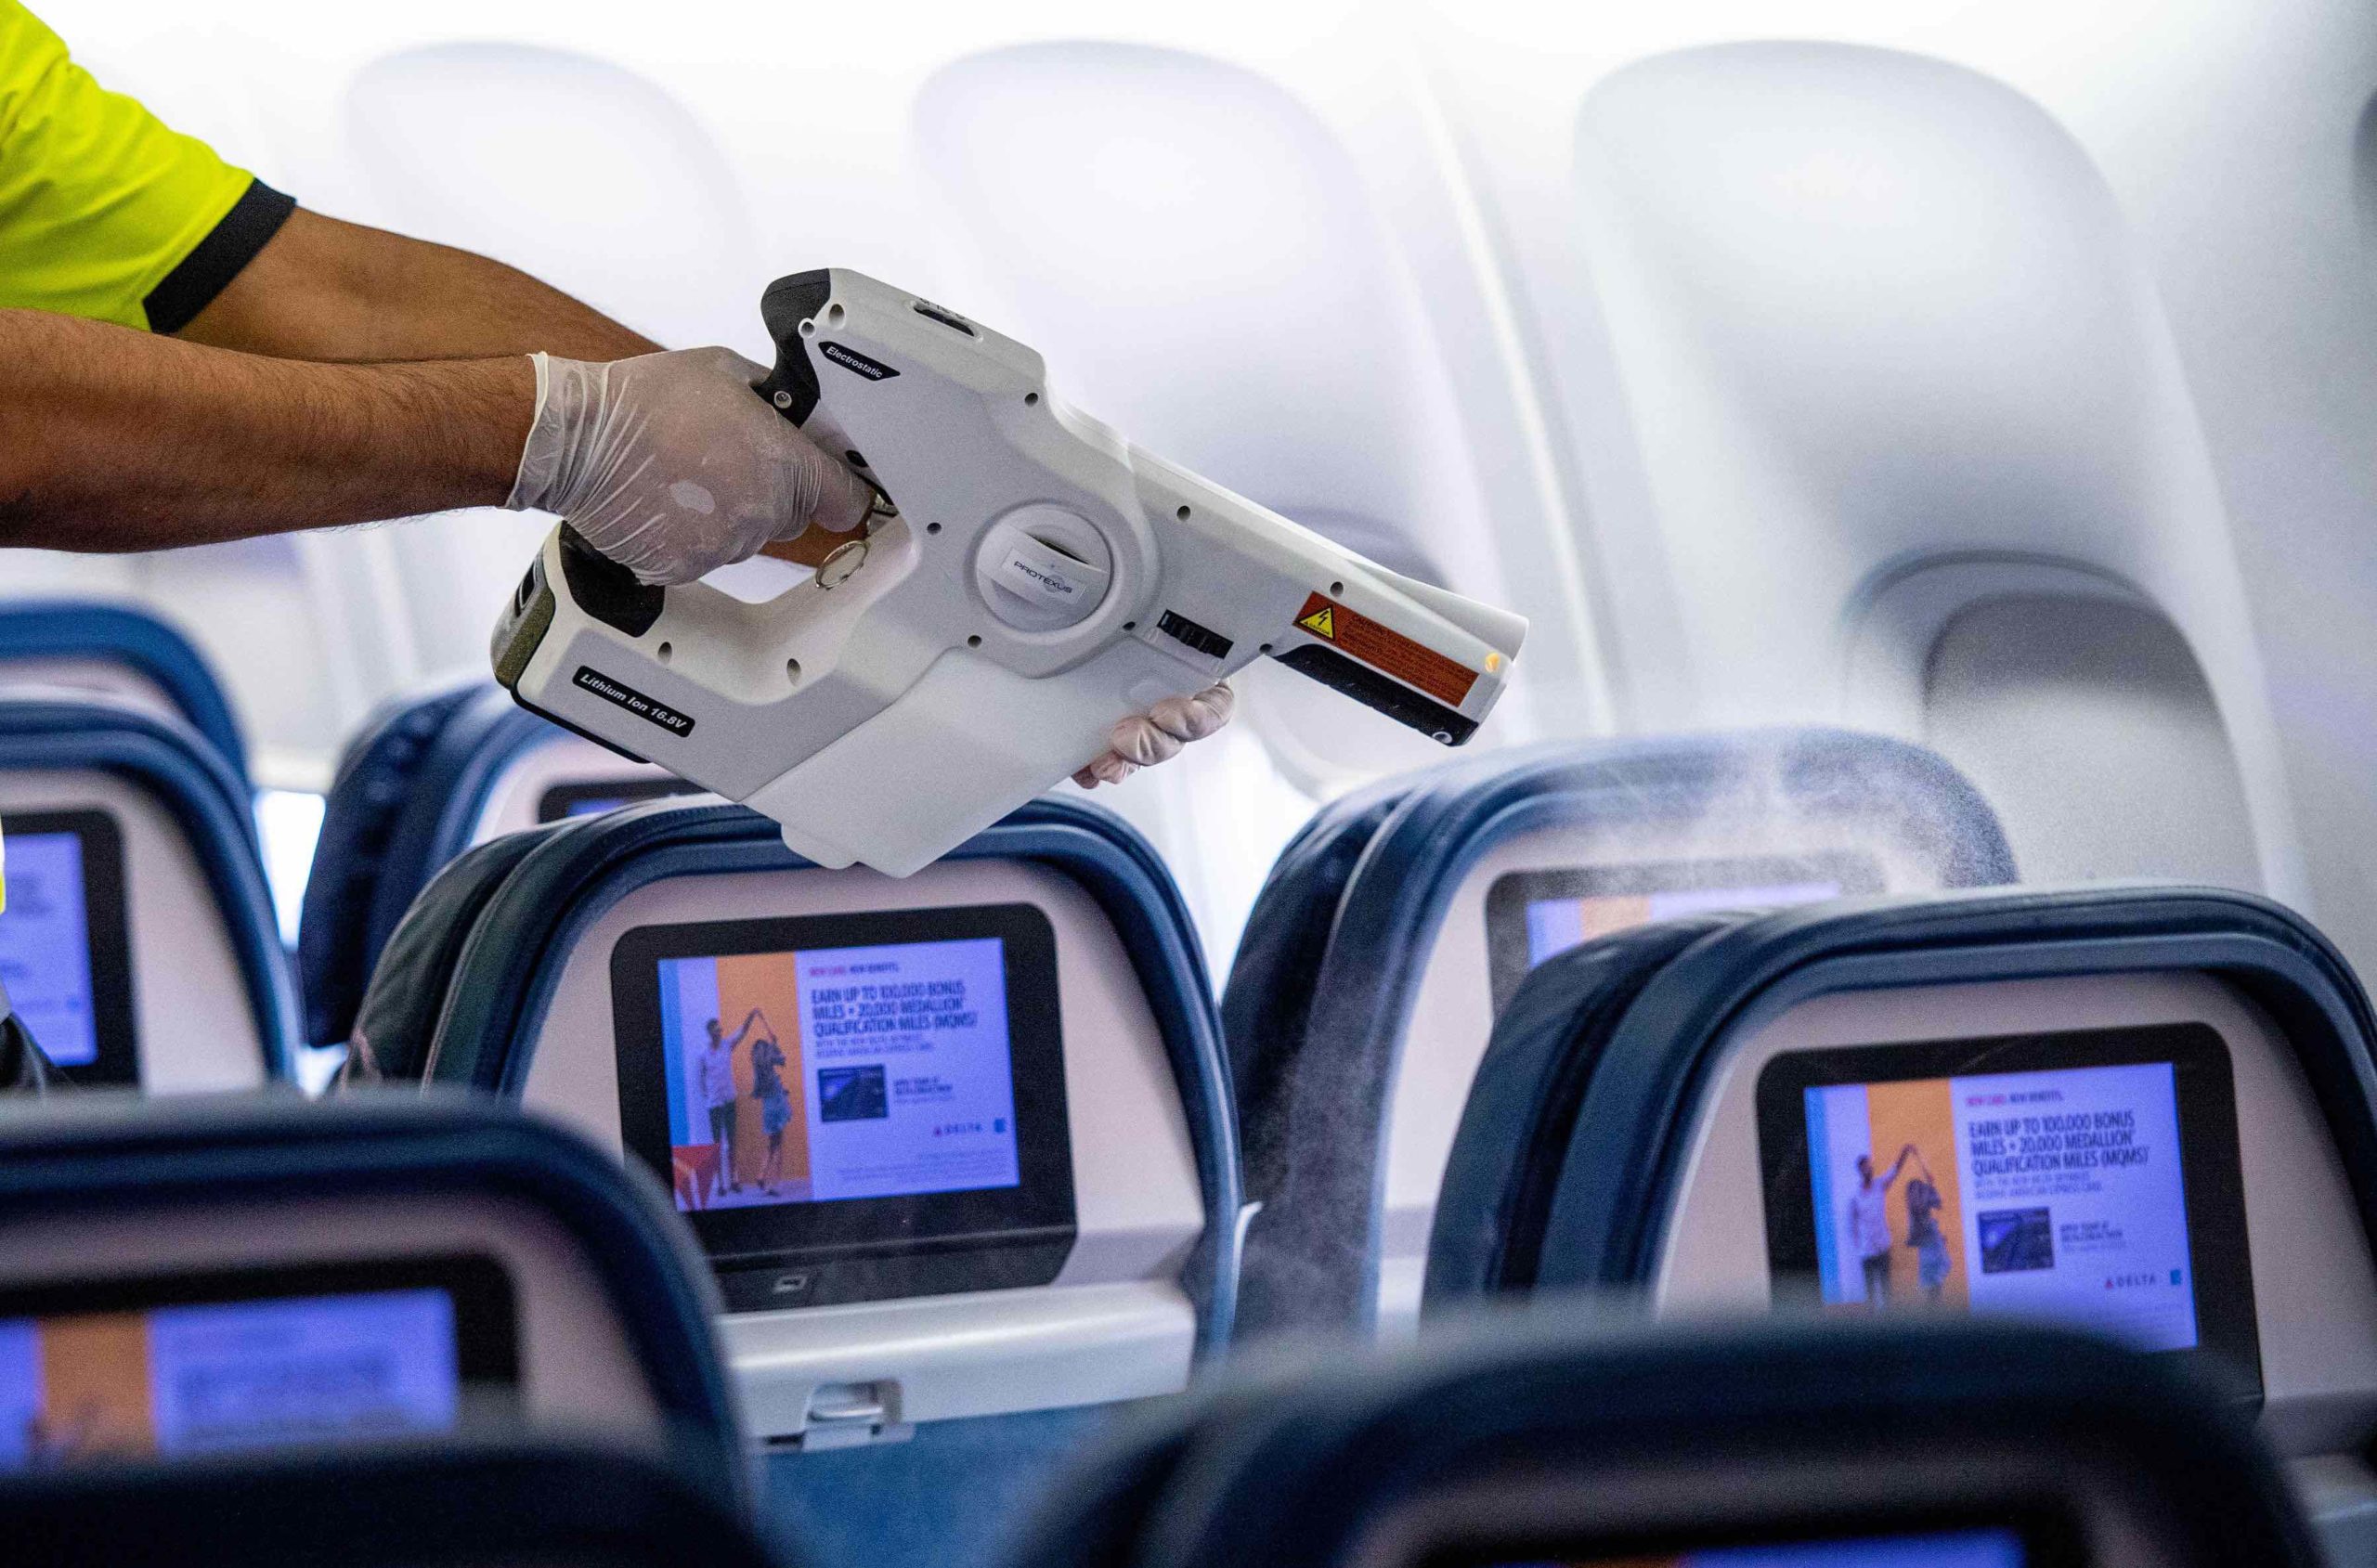 a person holding a gun in an airplane